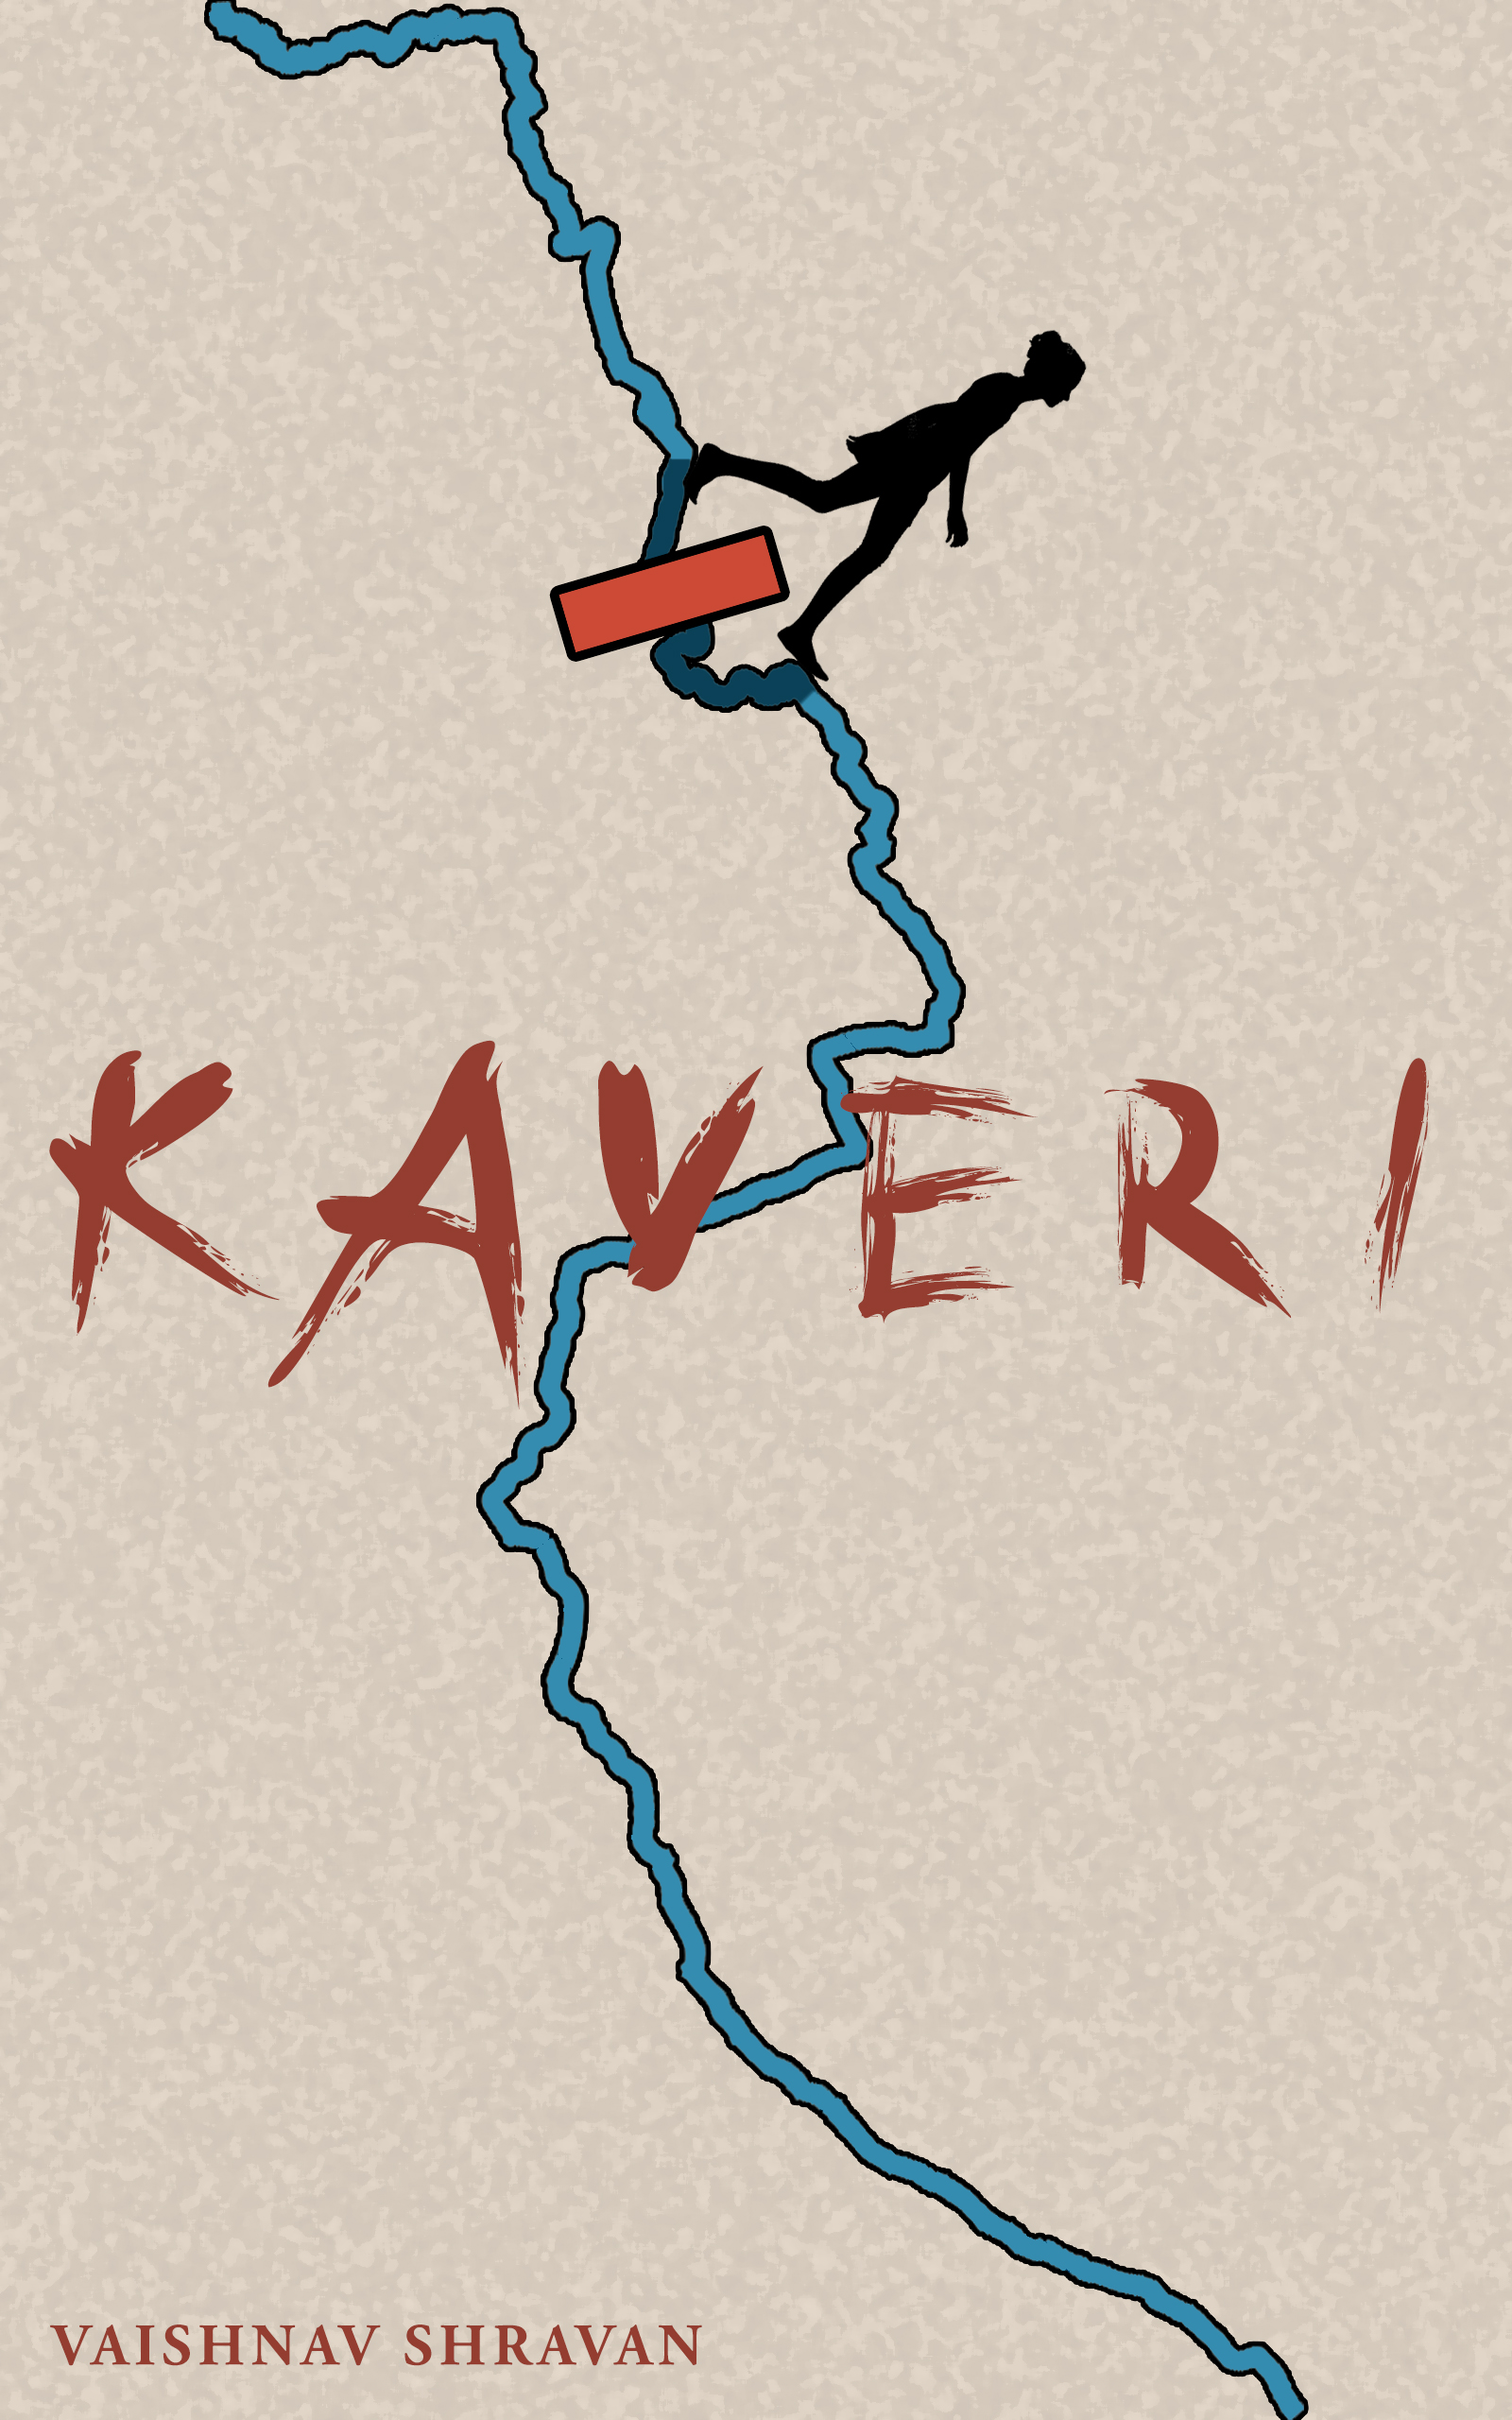 FREE: Kaveri by Vaishnav Shravan